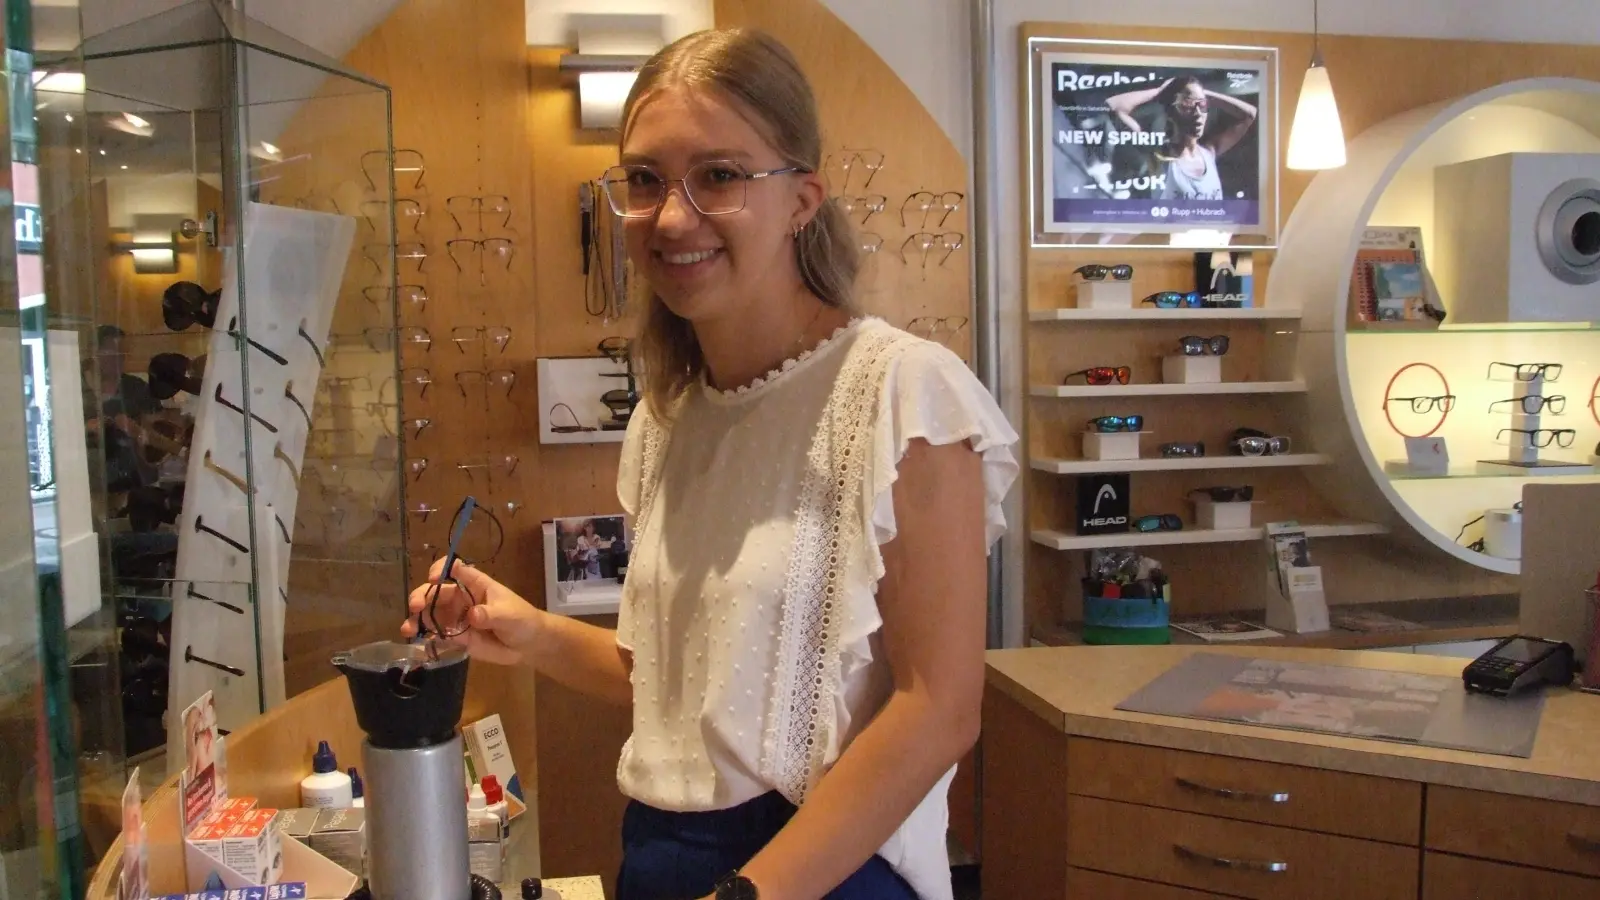 Johanna Dörr an der Ventilette: Dieses Heißluftgerät verwendet die Augenoptikerin beispielsweise, um die Bügel von Brillen zu erwärmen, damit sie leichter geformt werden können. (Foto: Jasmin Kiendl)